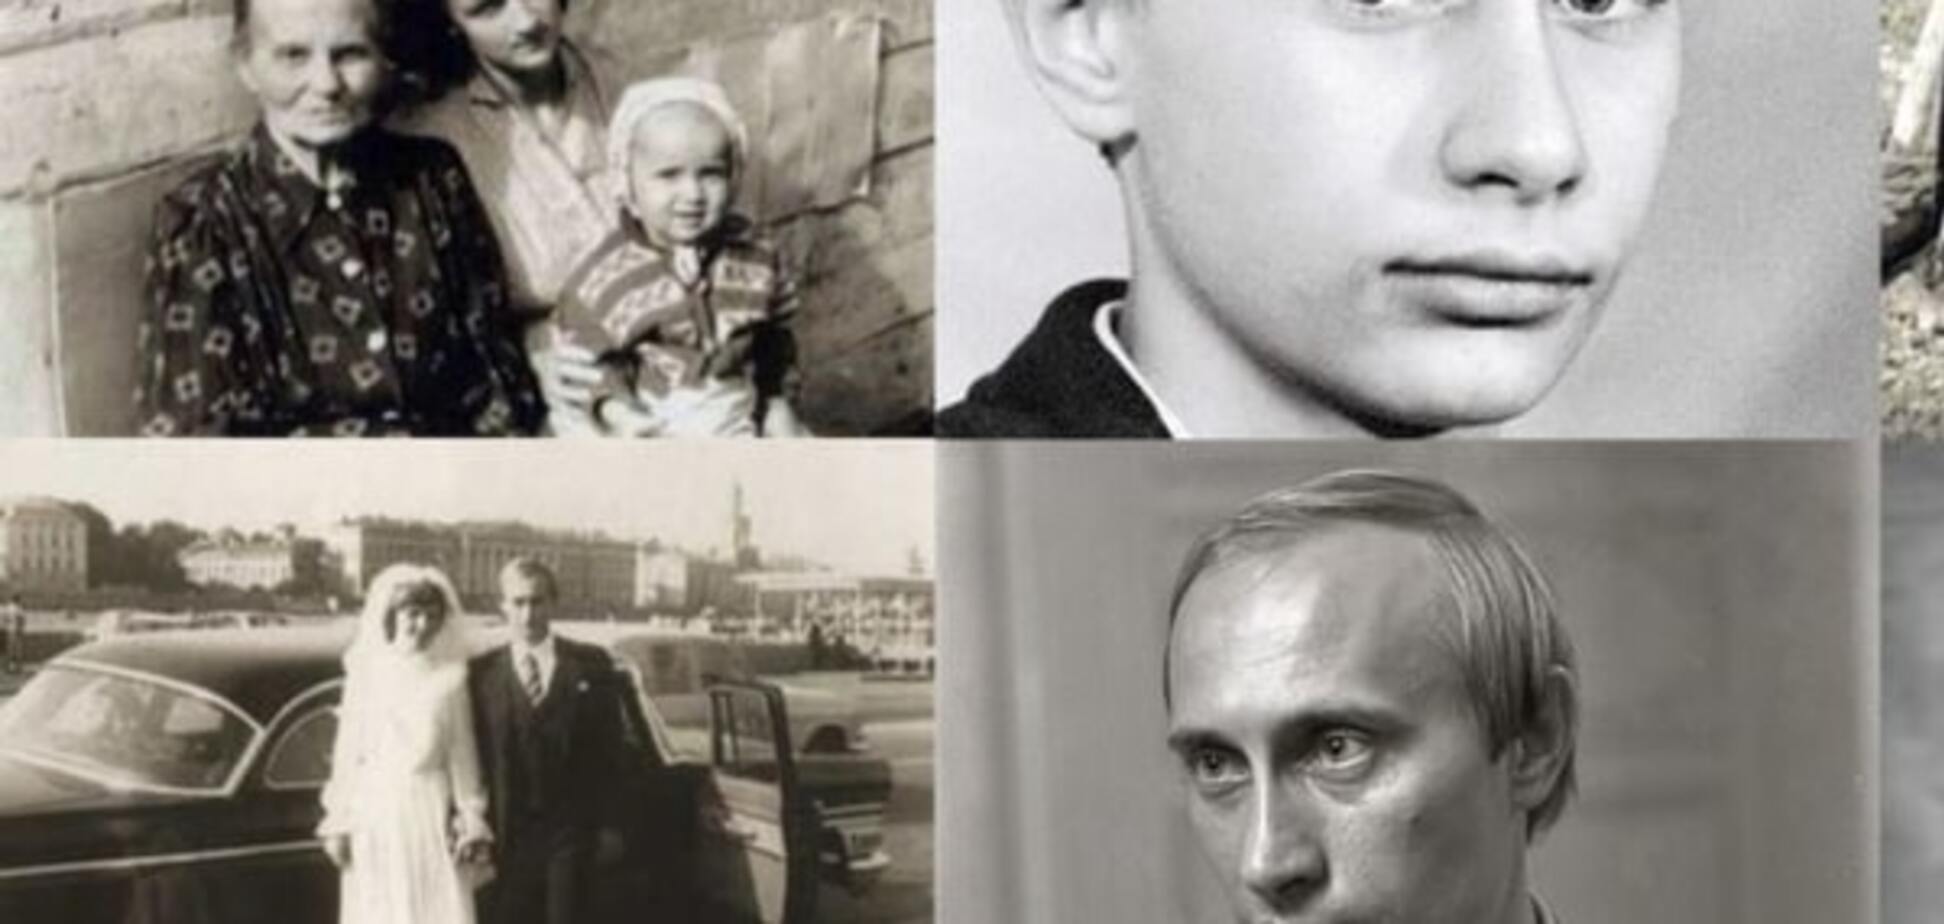 Как жила семья Путина: в сети показали архивные фото 